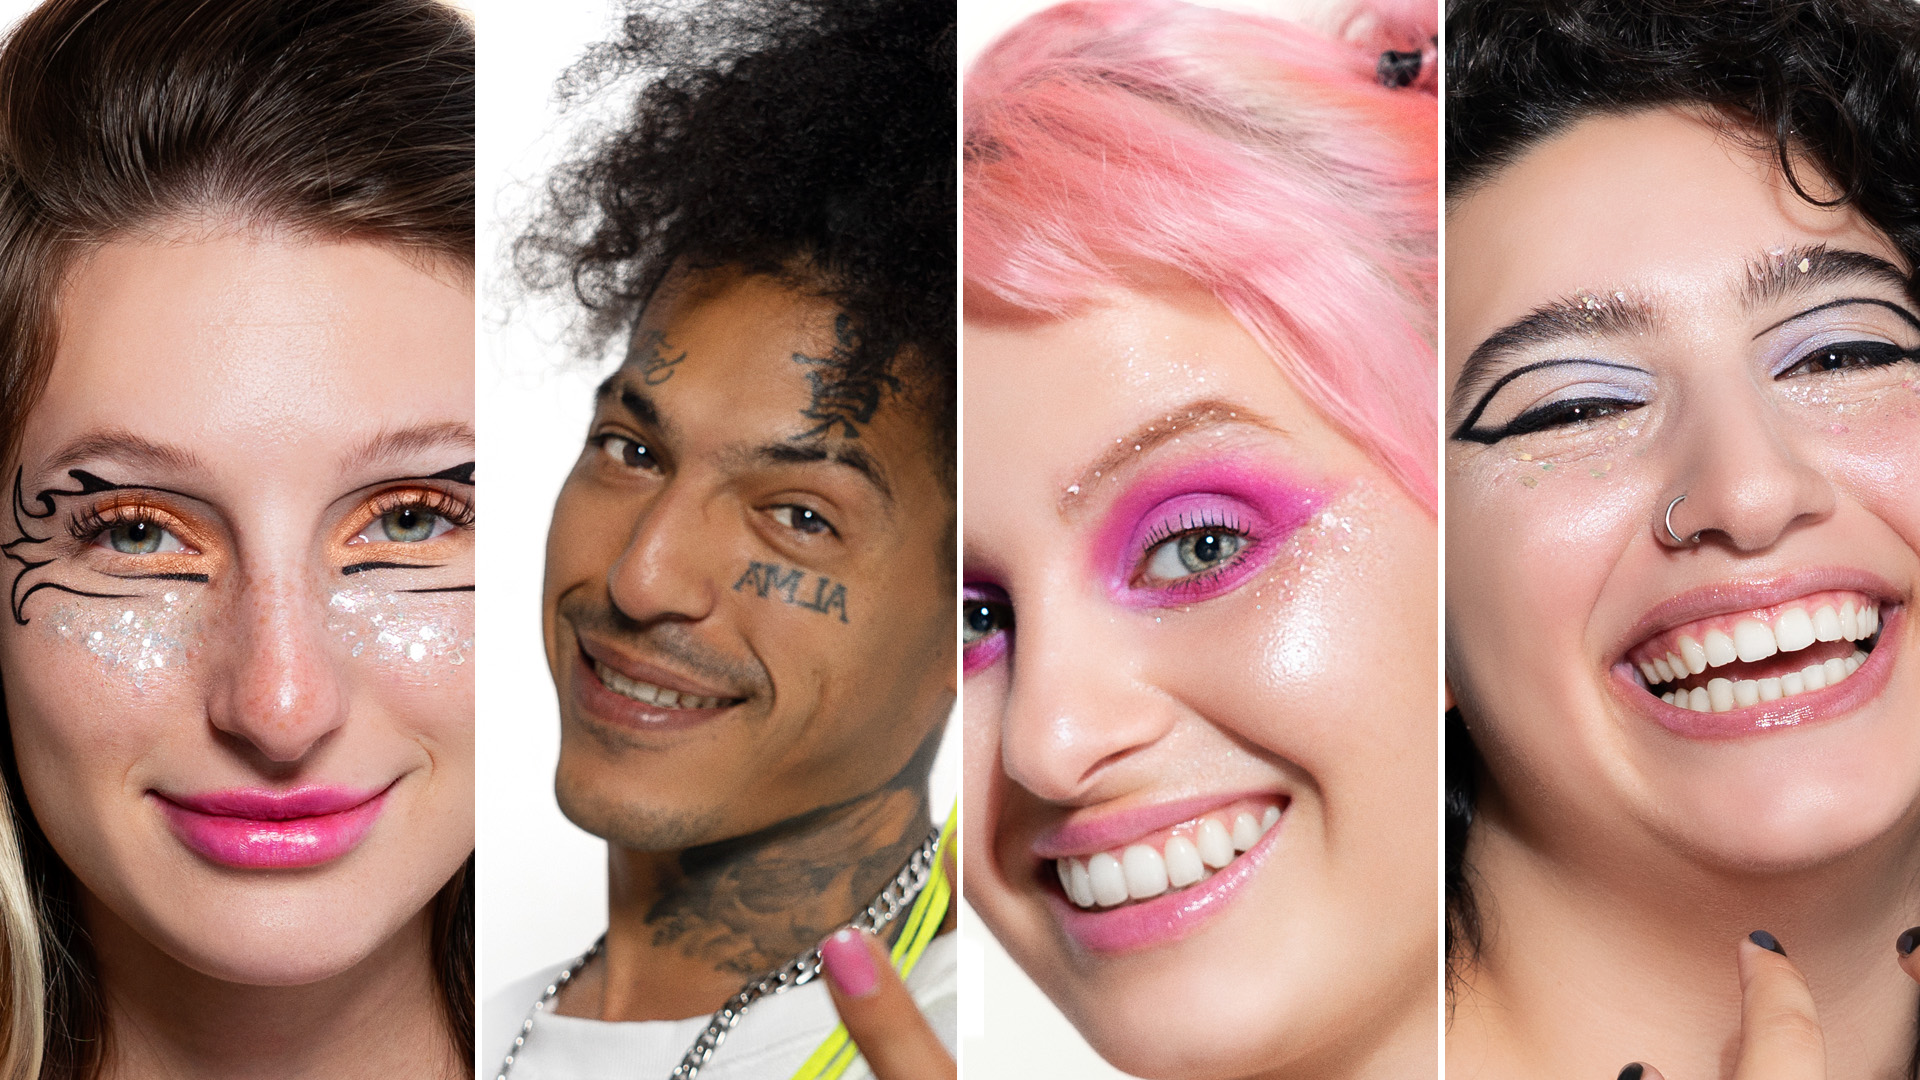 Maquillaje extremo in concert: makeup deslumbrante y sin género para vivir  otra experiencia del festival - Infobae